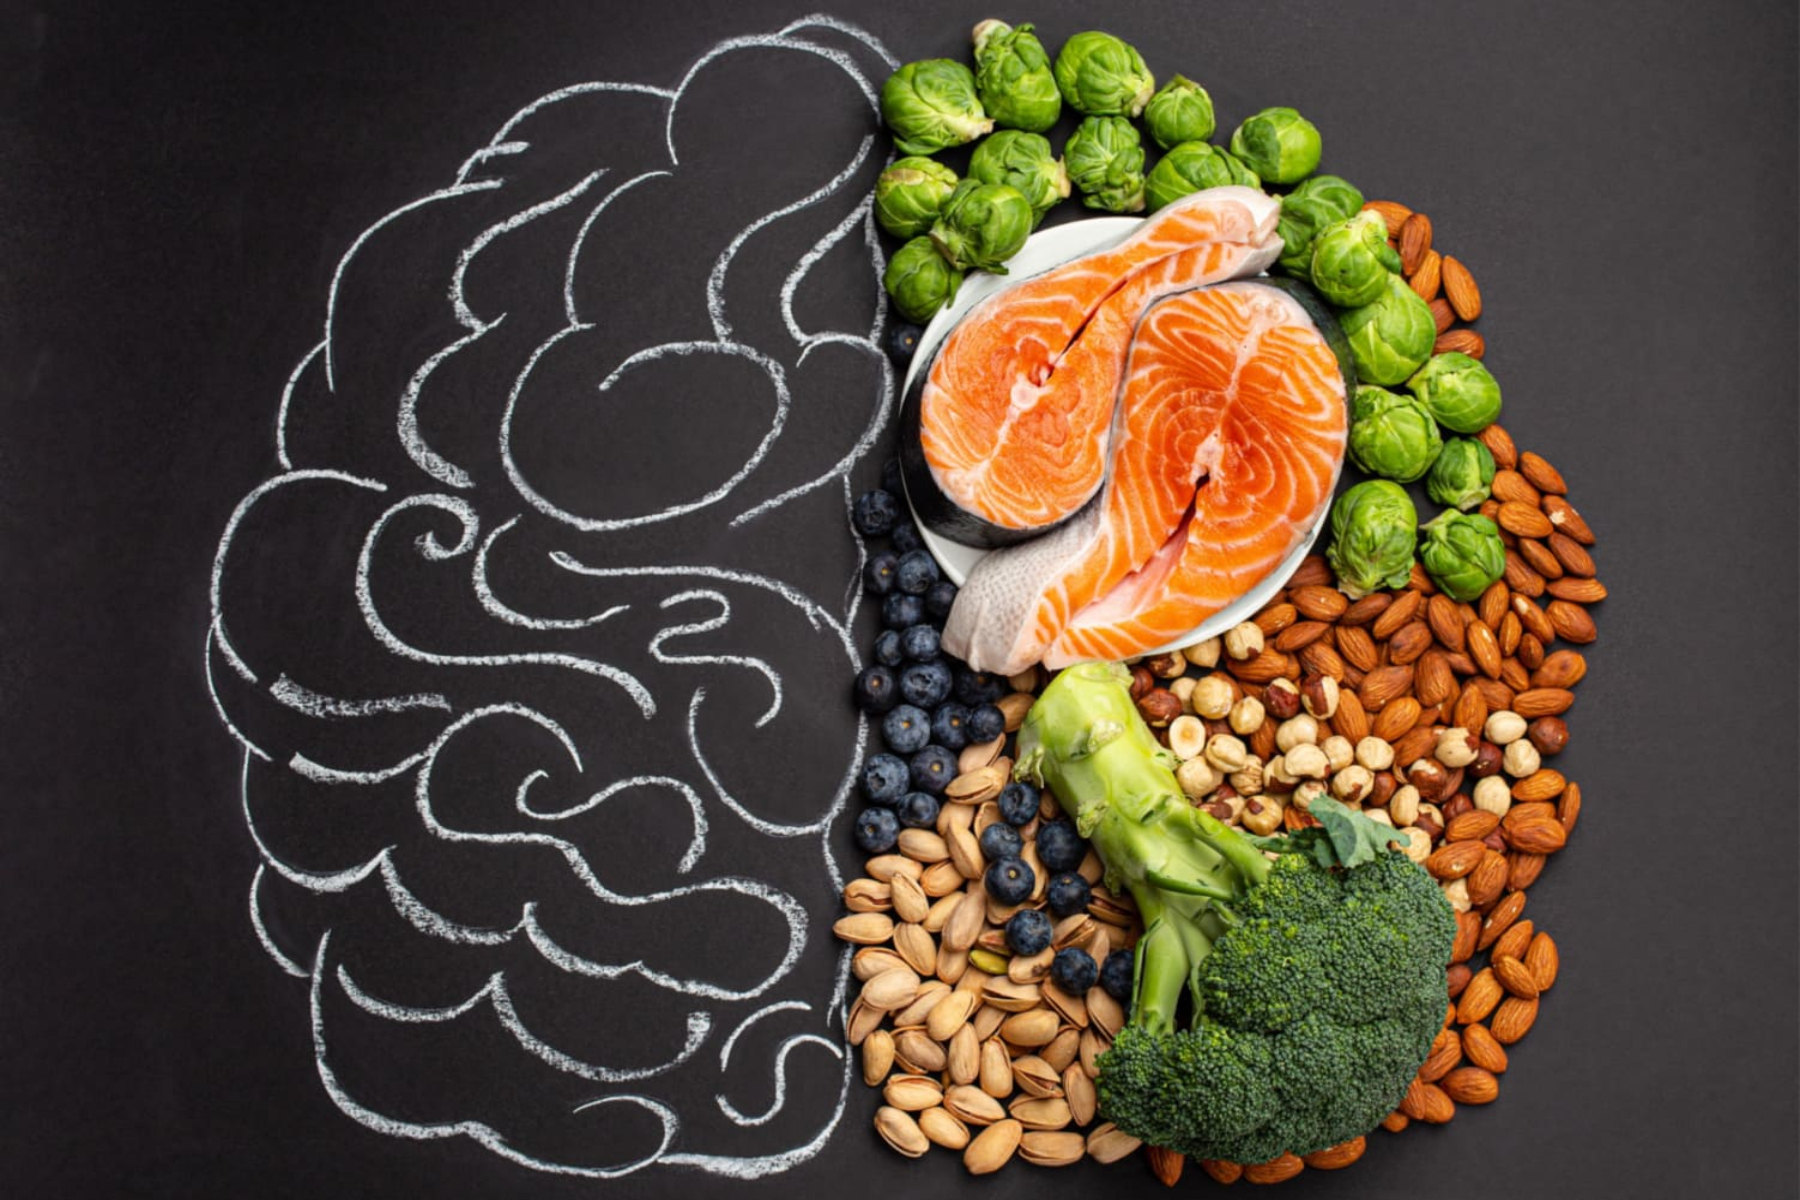 Διατροφή ψυχική υγεία: Ποιες τροφές βελτιώνουν τη διάθεσή μας;